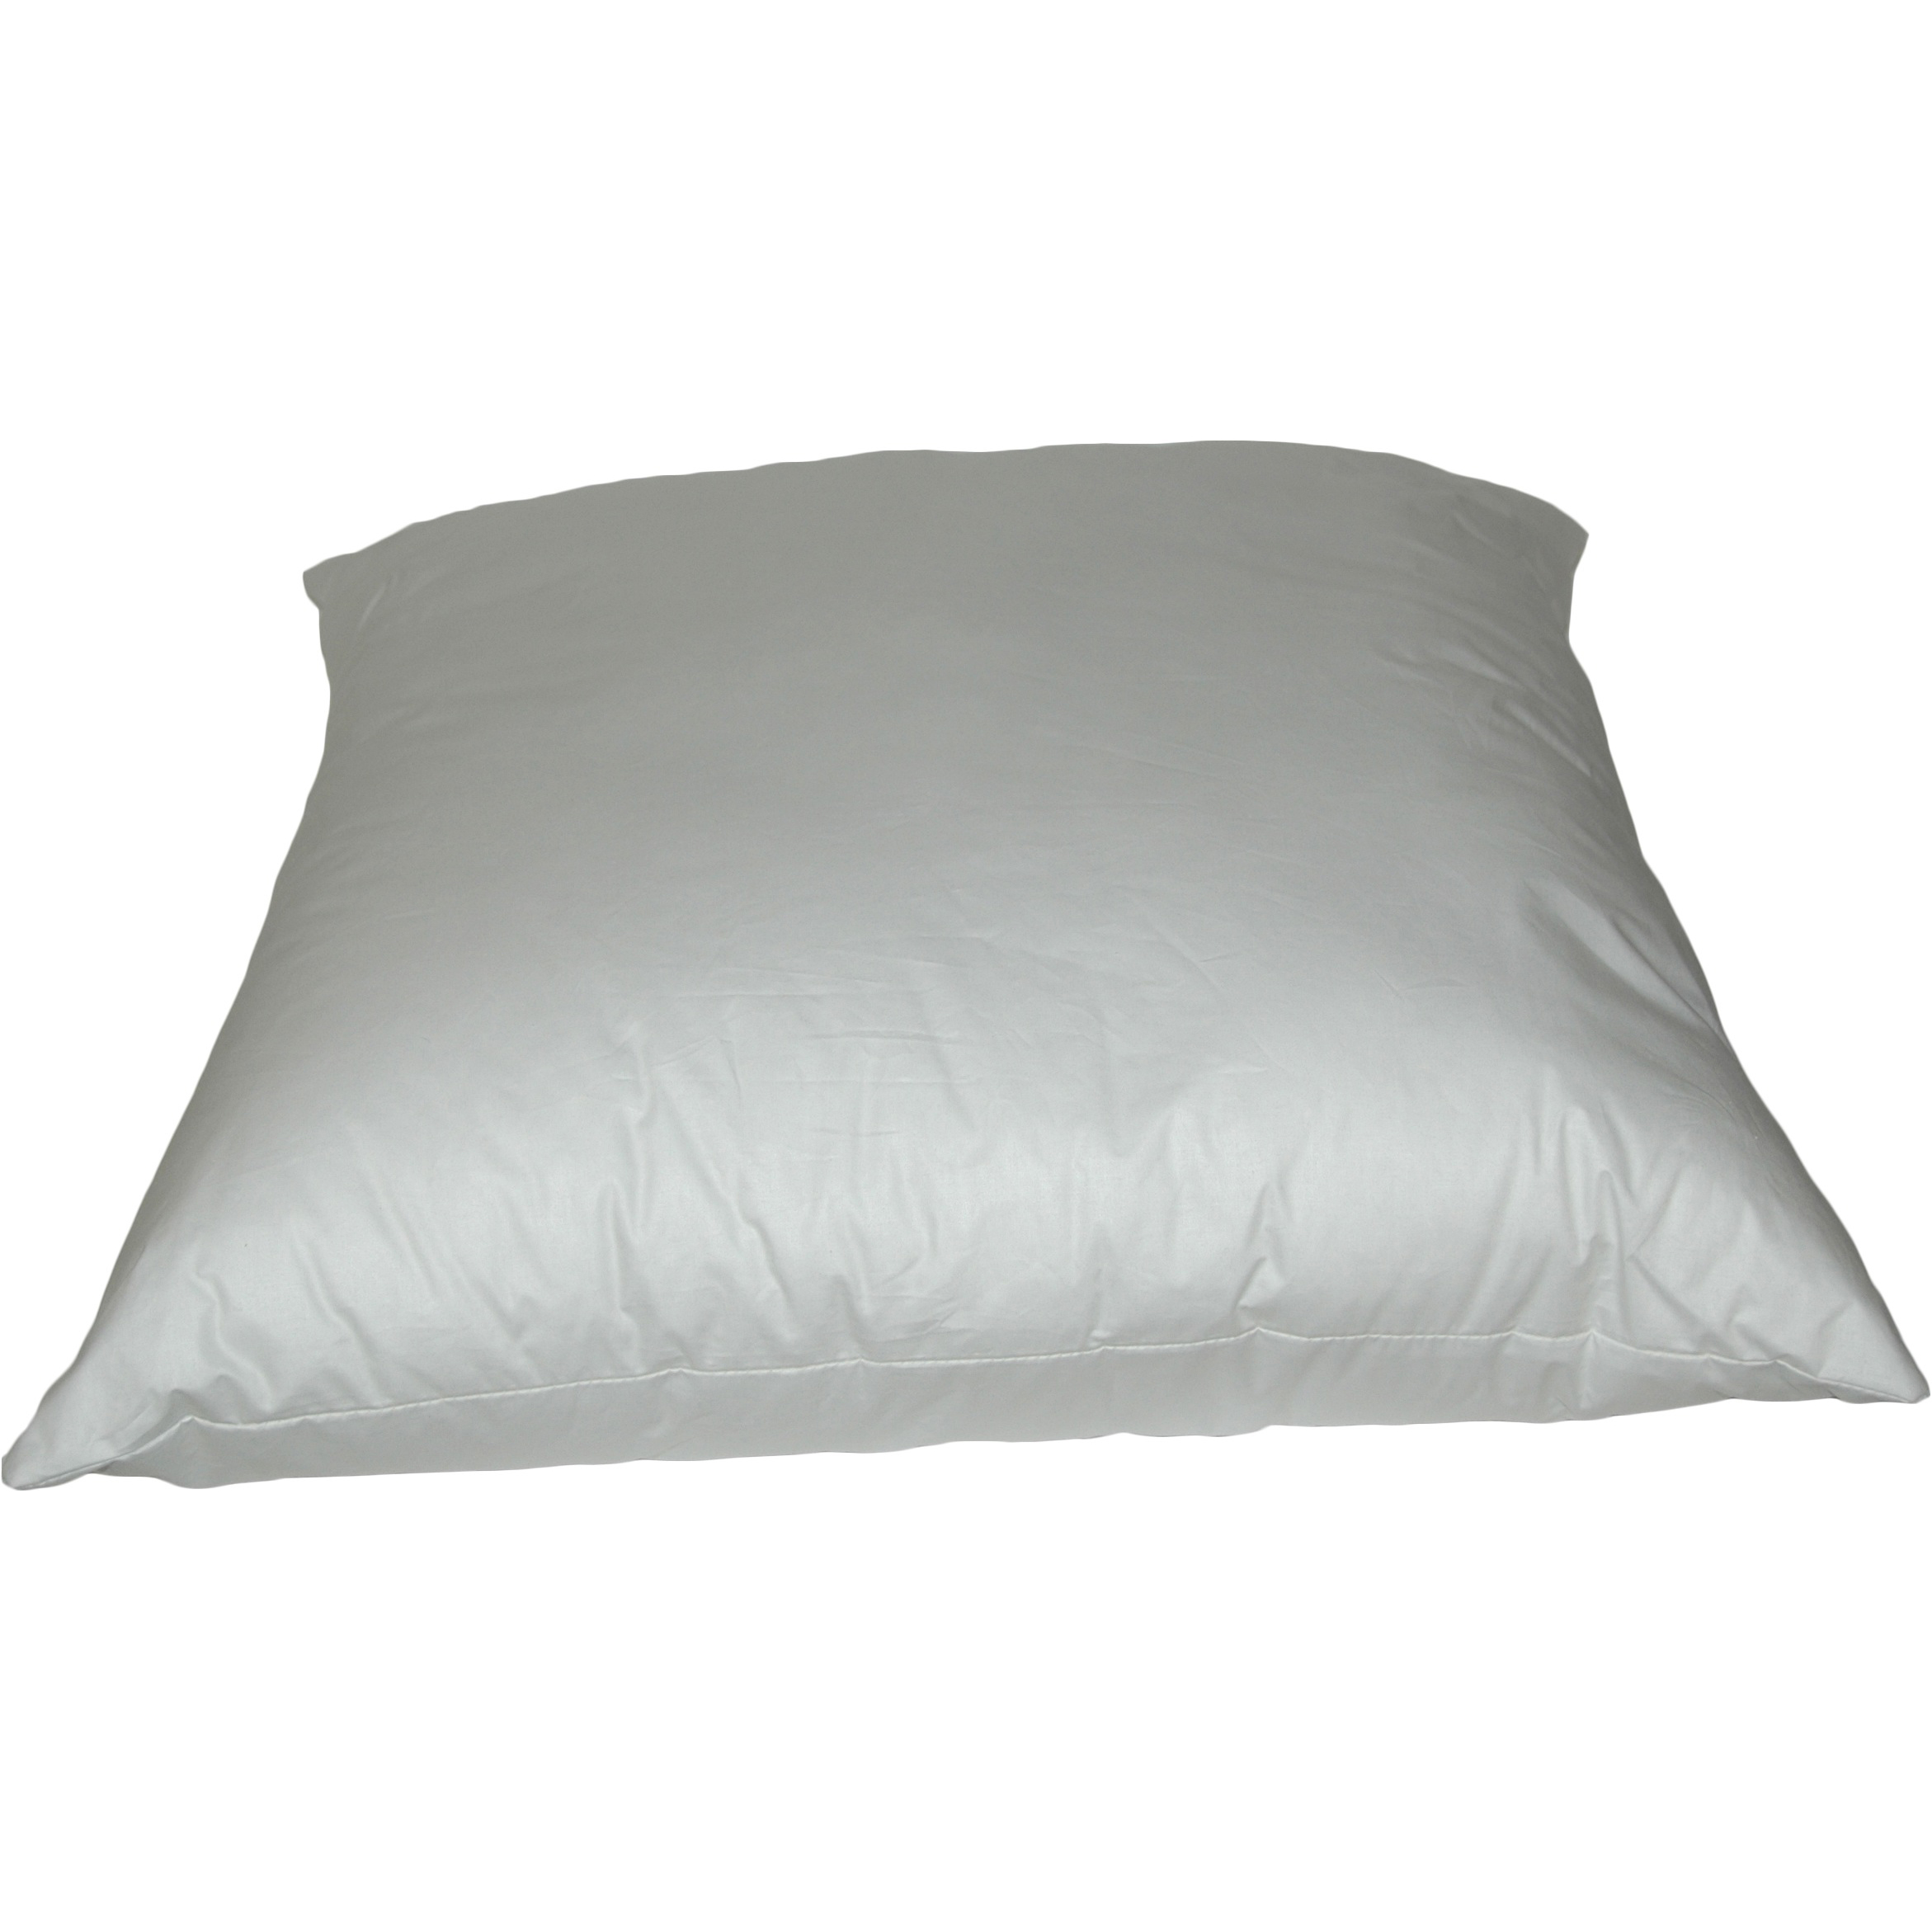 K-Fiber Pillows 14 inch